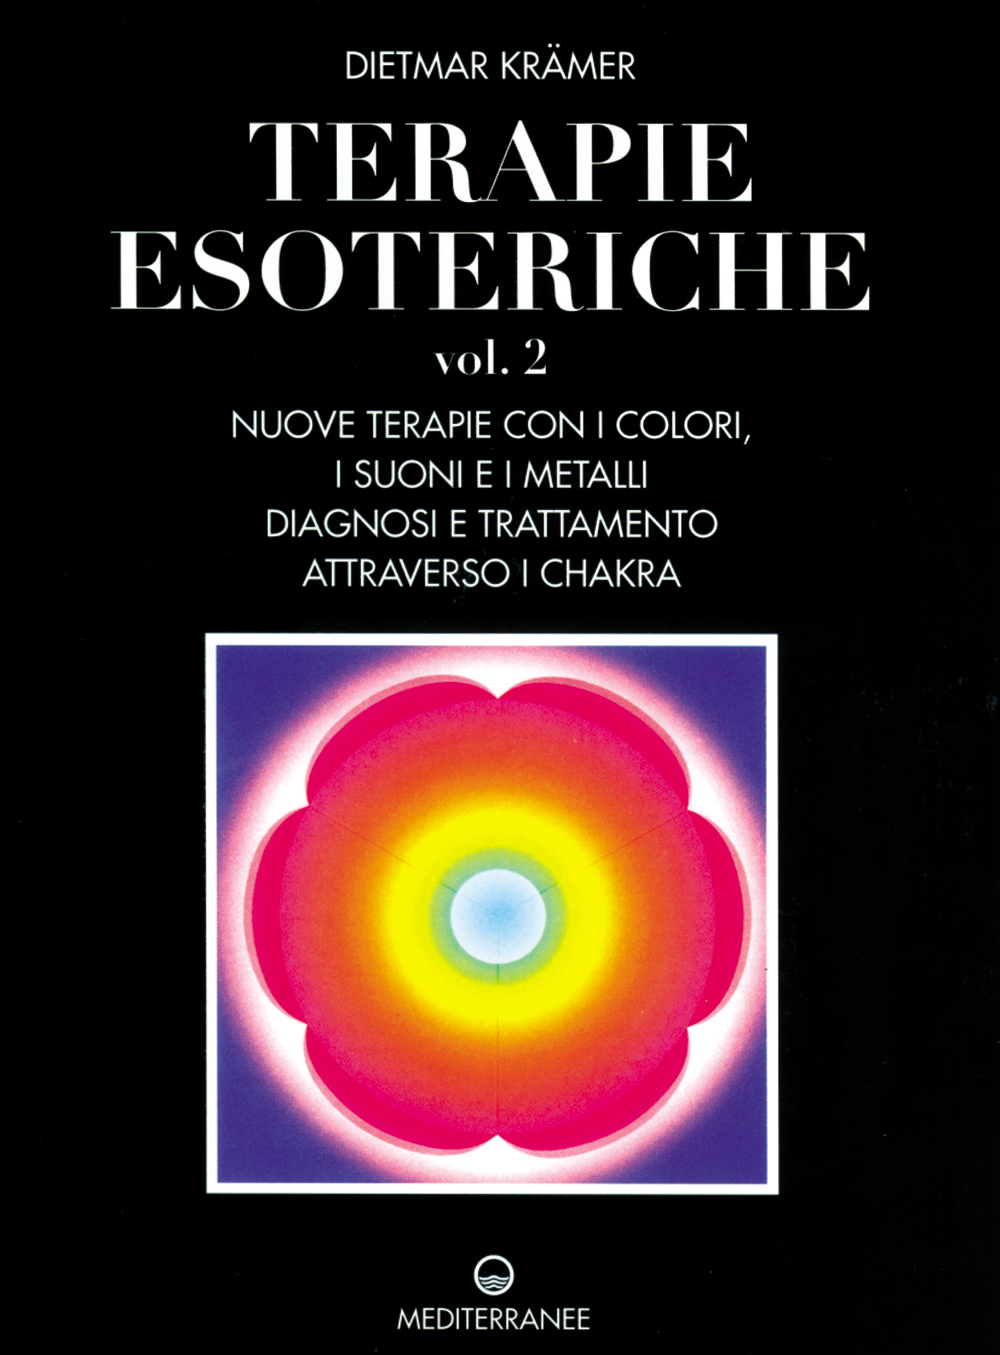 Libri Dietmar Krämer - Terapie Esoteriche NUOVO SIGILLATO, EDIZIONE DEL 01/08/1998 SUBITO DISPONIBILE